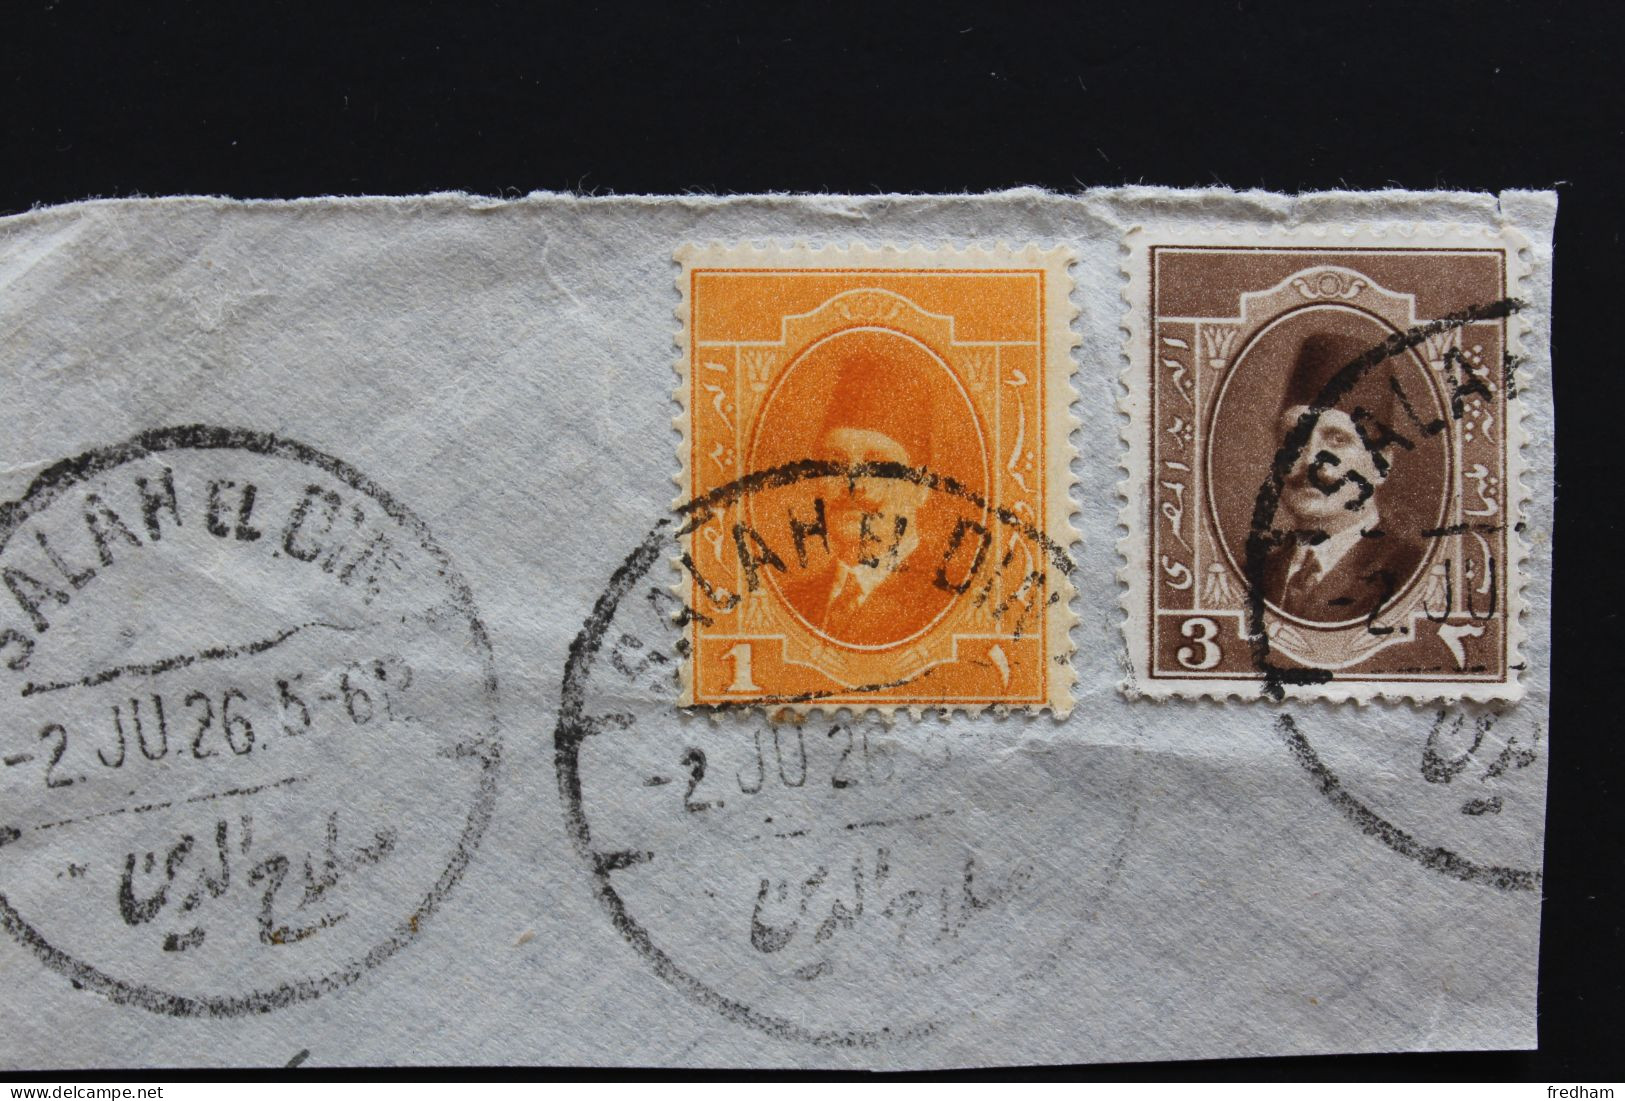 1926 CACHET SALAH EL DIN DU 2 JU.26 SUR Y&T NO EG 82 ET 84  ROI FOUAD I 2M ORANGE  ET 3M BRUN  SUR FRAGMENT.. - Used Stamps